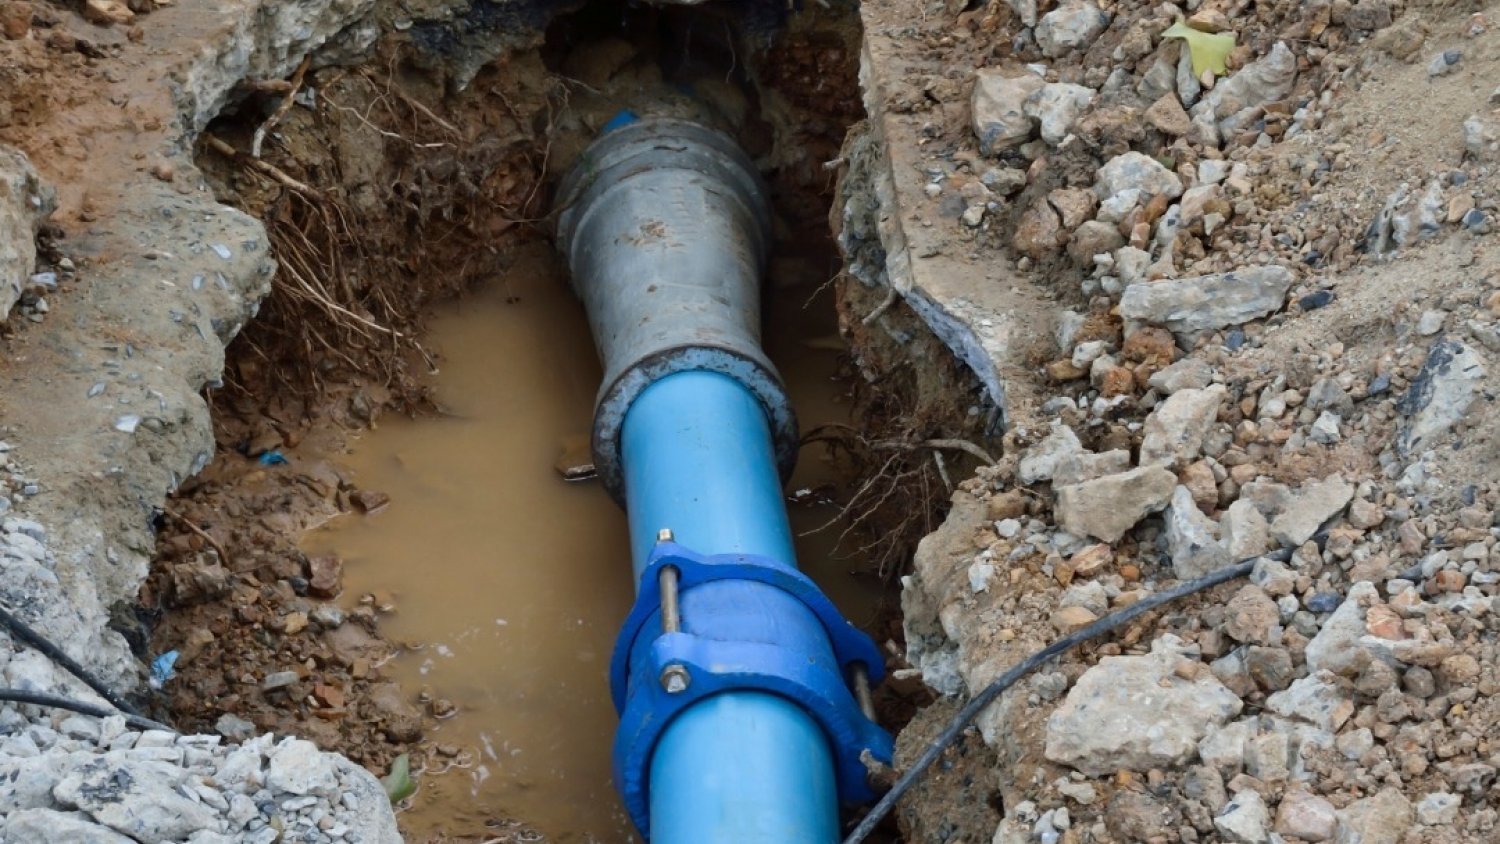 El suministro de agua en alta se interrumpirá en las tomas de El Pinillo debido a la reparación de una avería